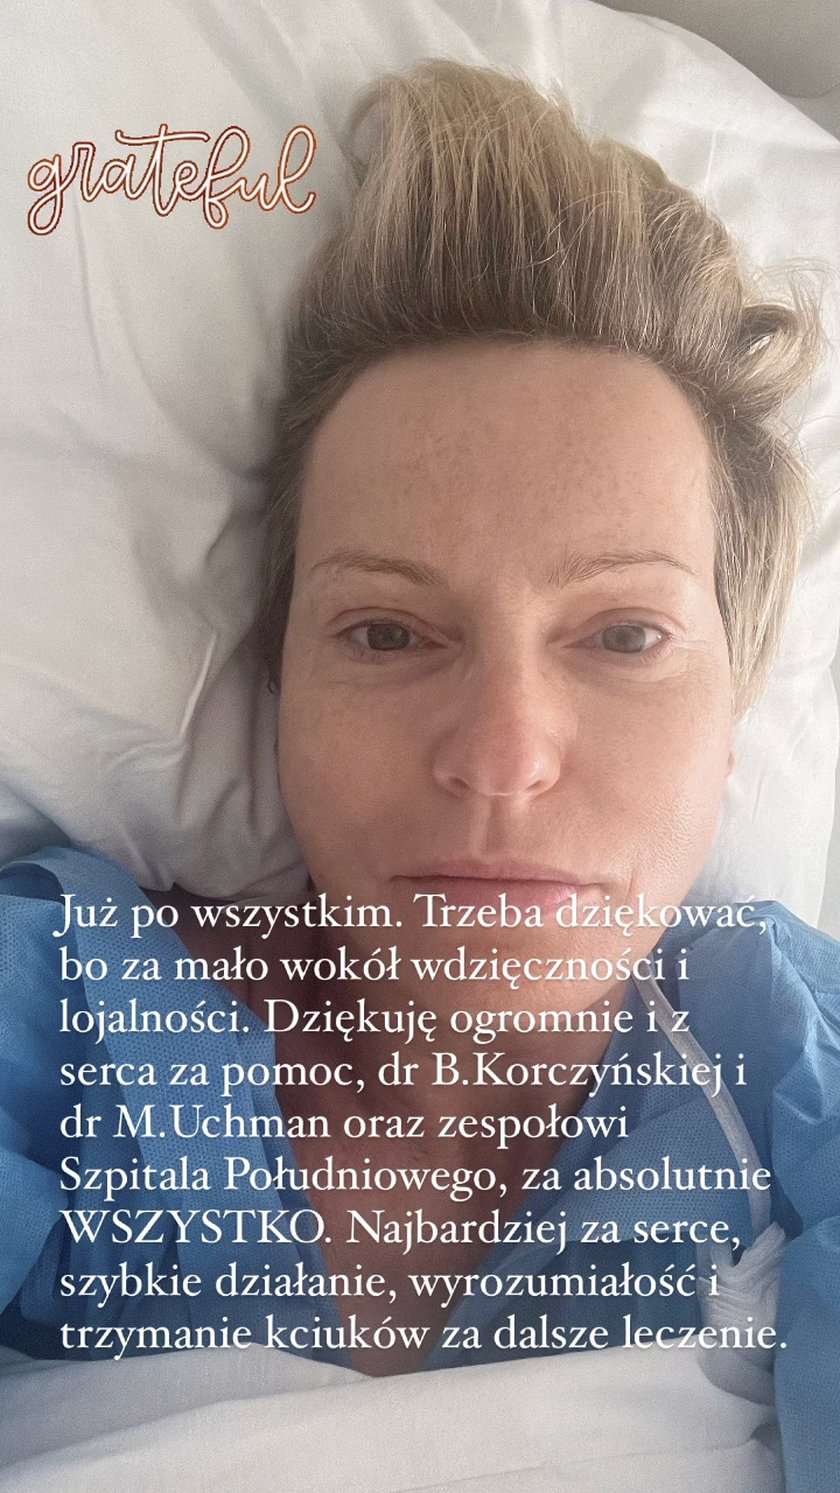 Paulina Smaszcz zdała relację ze szpitala.